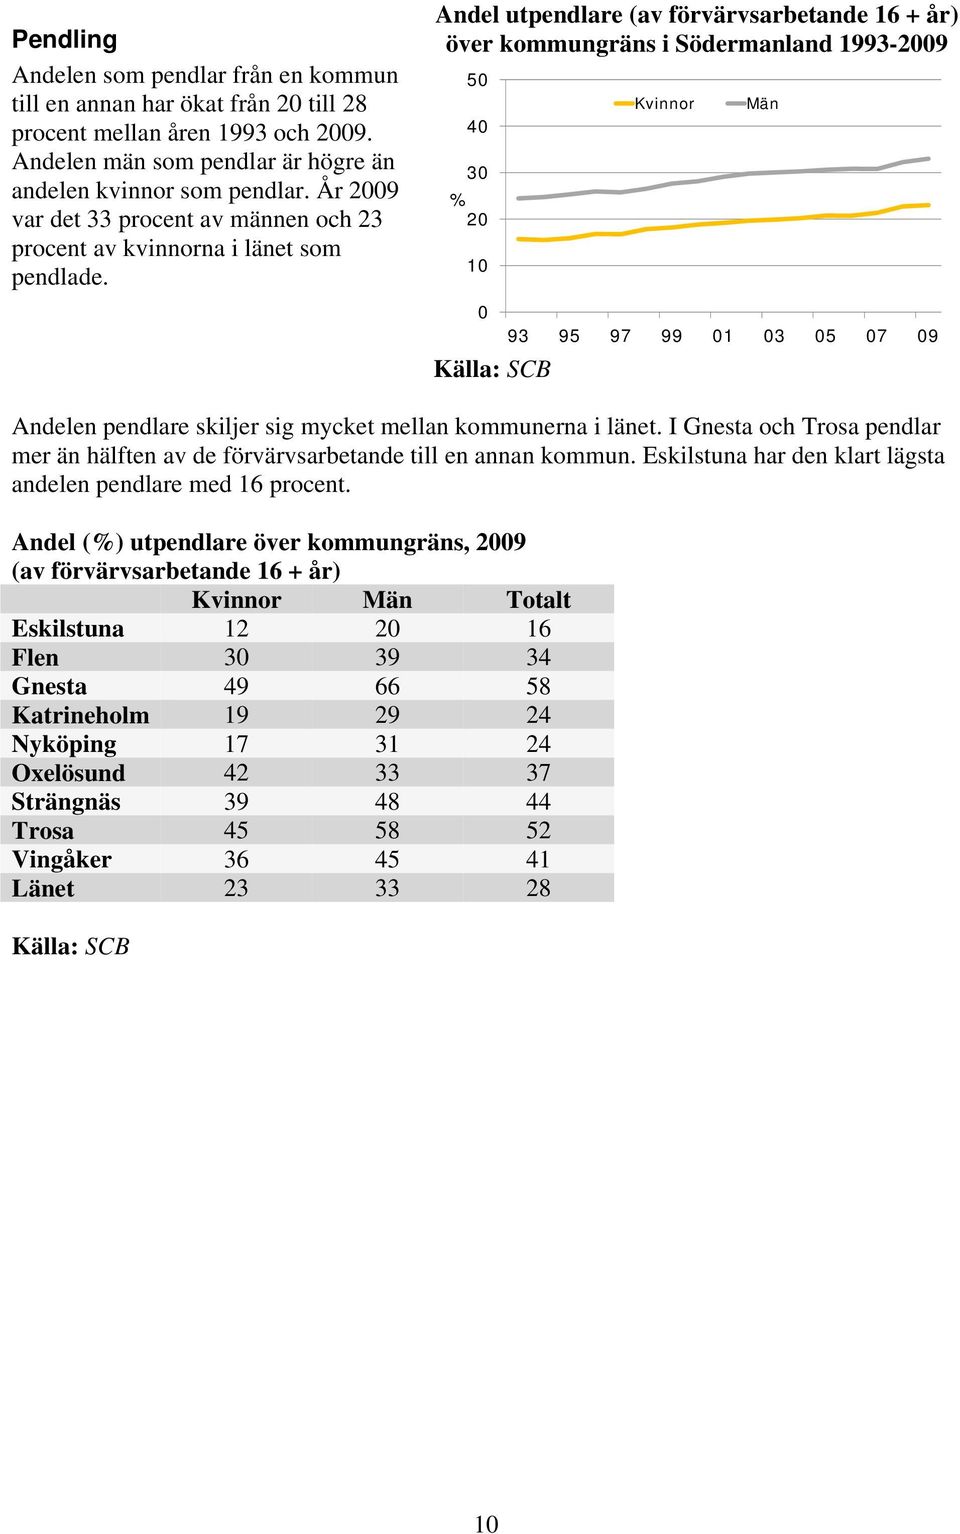 Andel utpendlare (av förvärvsarbetande 16 + år) över kommungräns i Södermanland 1993-29 5 4 3 2 1 Källa: SCB Kvinnor Män 93 95 97 99 1 3 5 7 9 Andelen pendlare skiljer sig mycket mellan kommunerna i